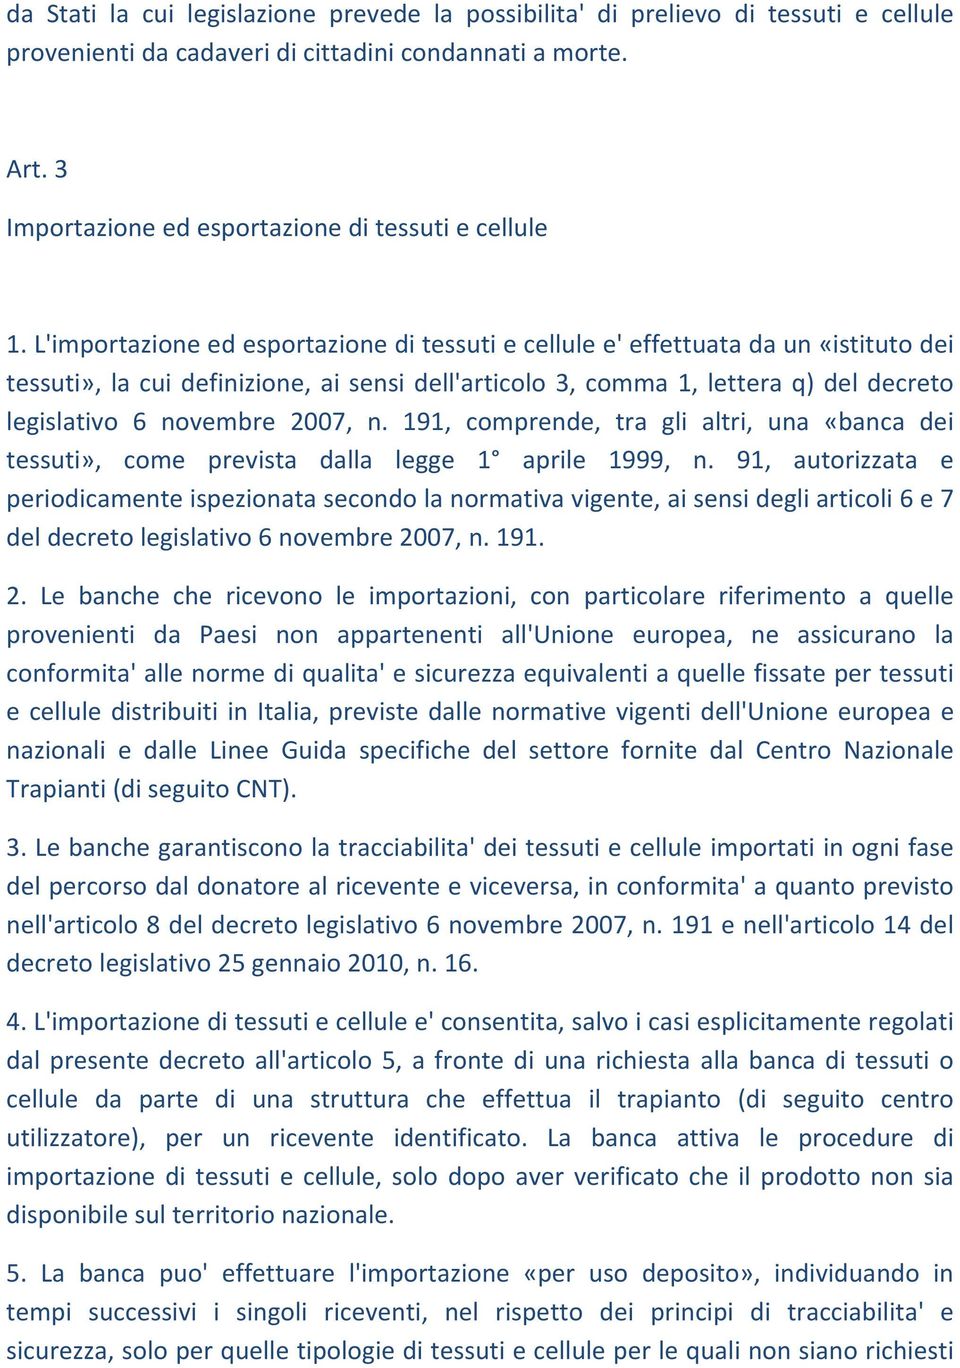 L'importazione ed esportazione di tessuti e cellule e' effettuata da un «istituto dei tessuti», la cui definizione, ai sensi dell'articolo 3, comma 1, lettera q) del decreto legislativo 6 novembre